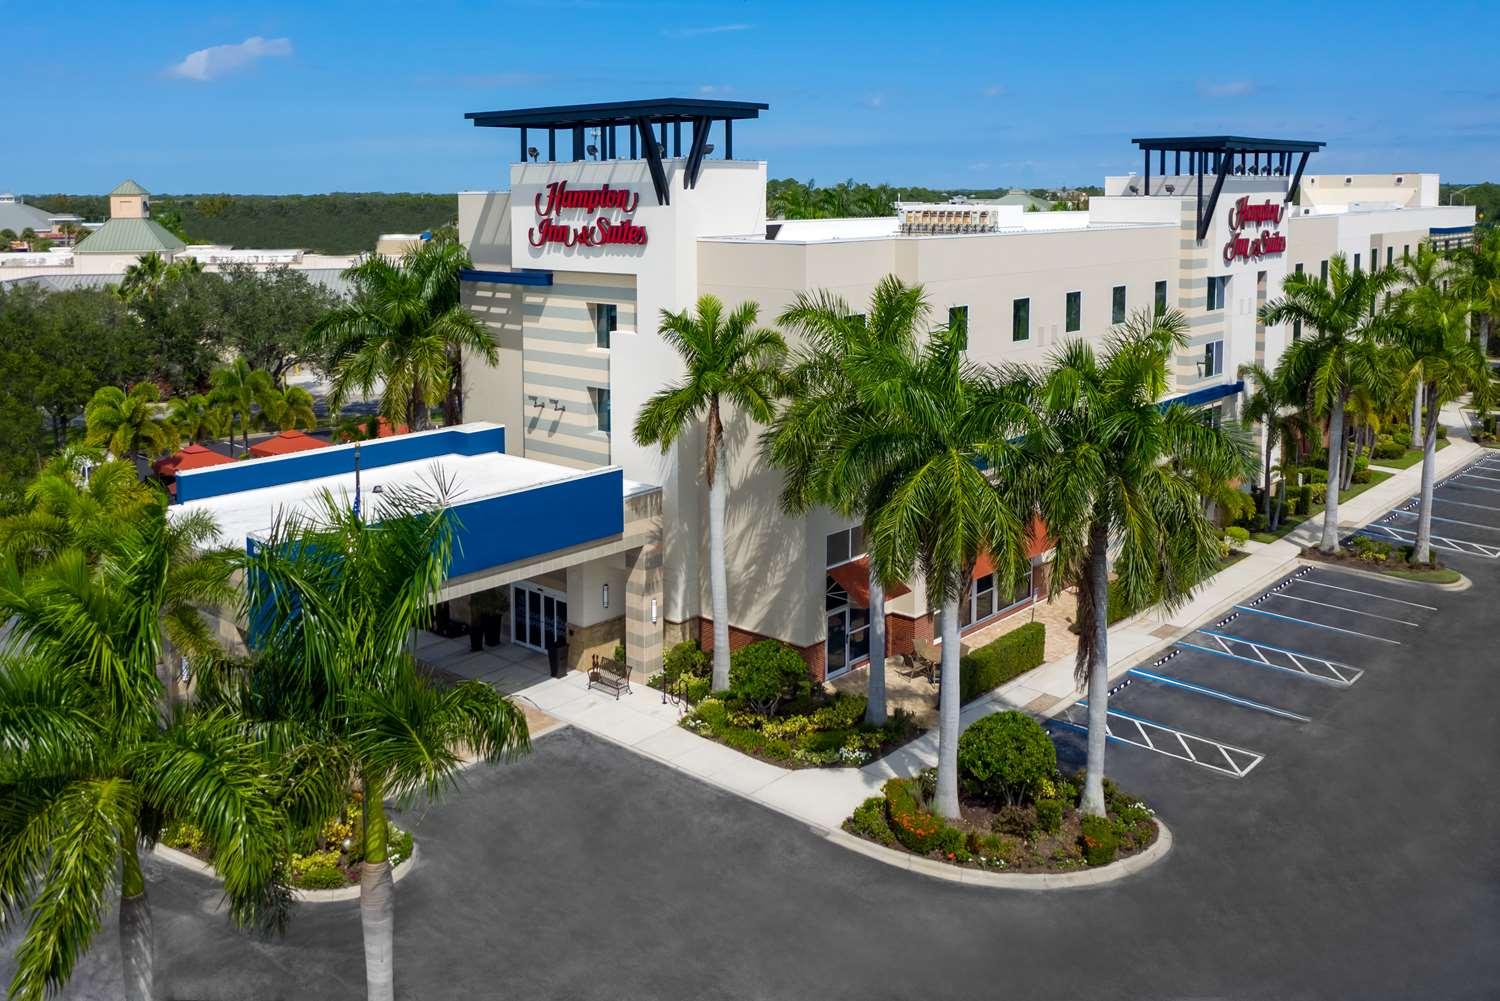 Hampton Inn & Suites Sarasota/Lakewood Ranch in Sarasota, FL